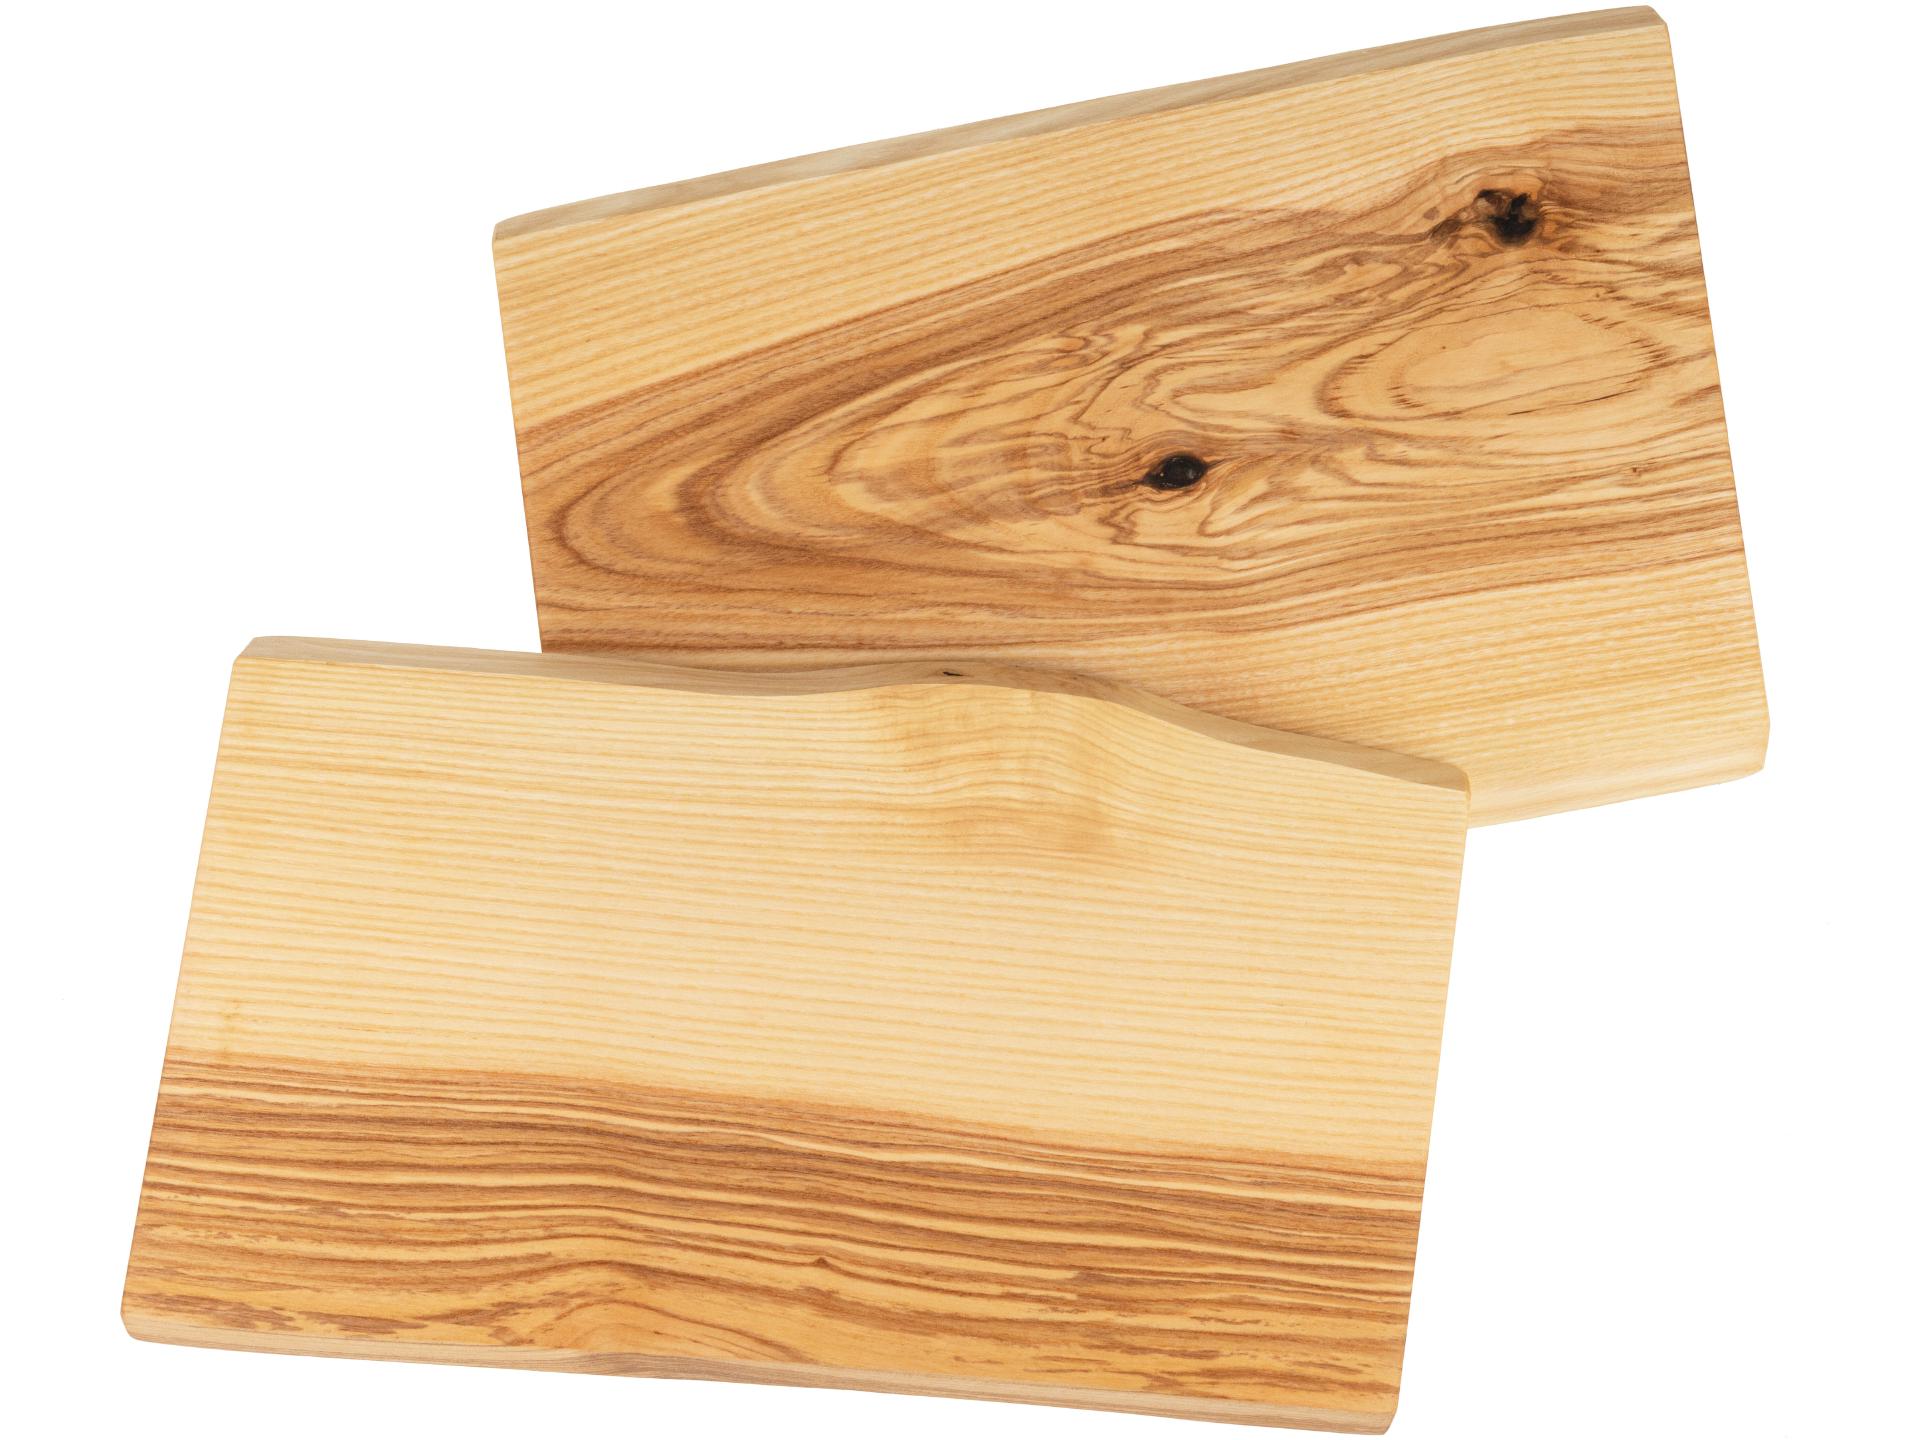 Holz Schneidebrett aus Kern Esche geölt mit Baumkante geschliffen 22mm dick 42 x 22-25 cm